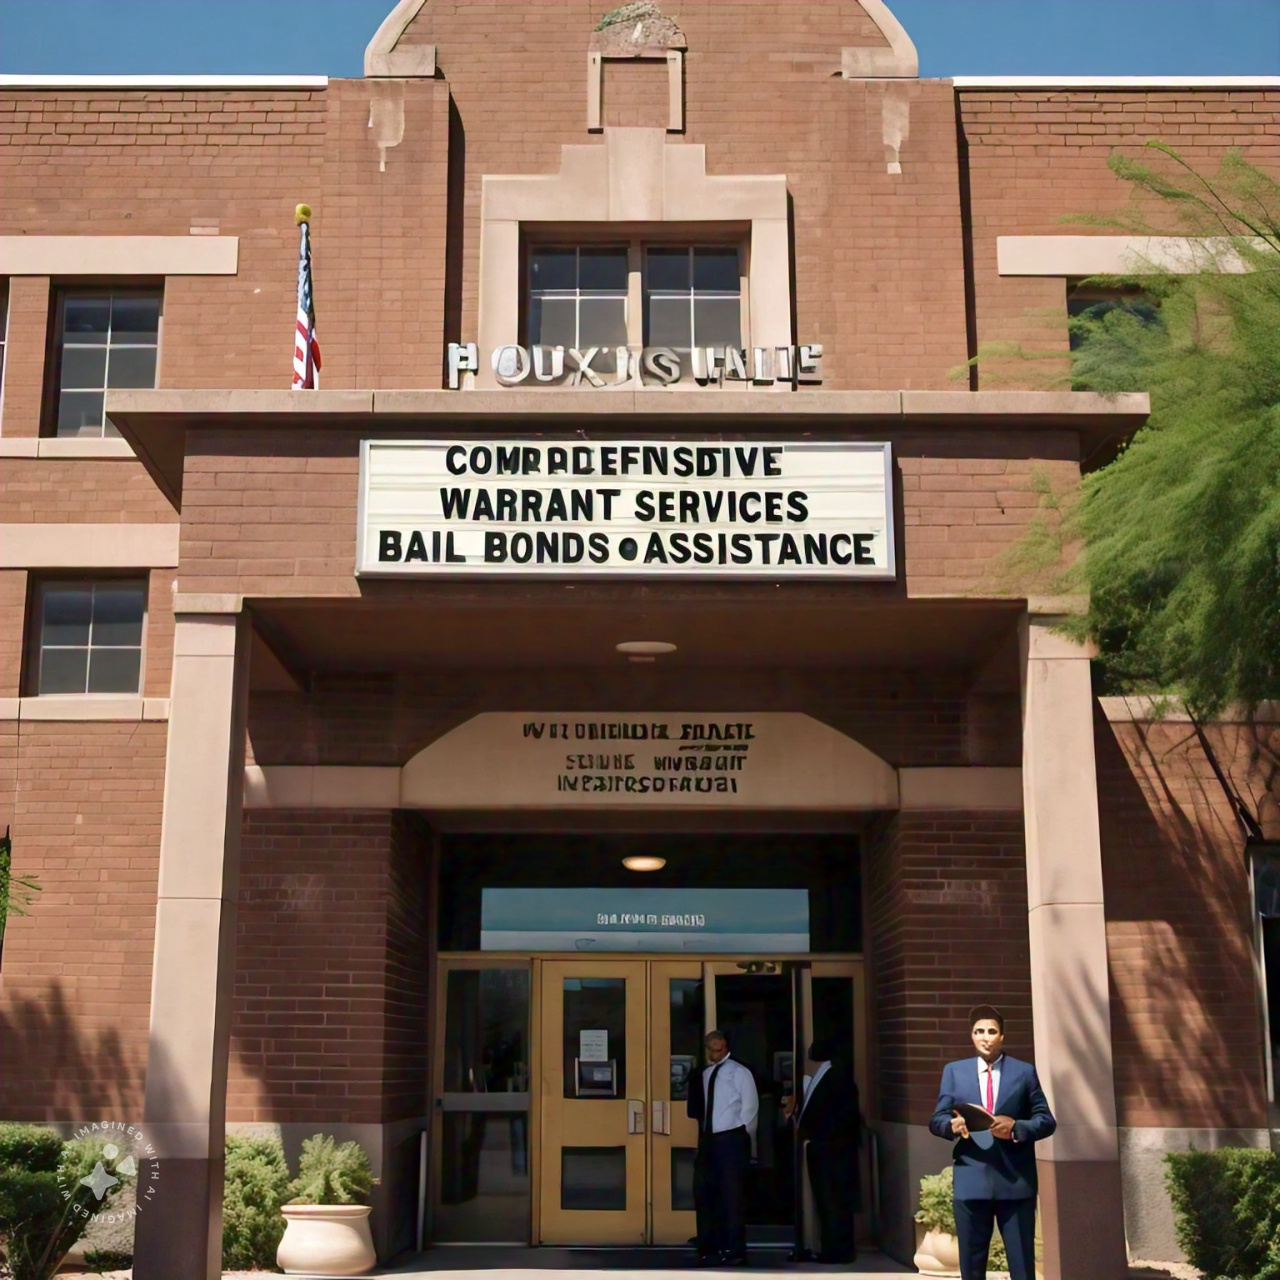 Sanctuary Bail Bonds Expands Services: Comprehensive Warrant Services, Bail Bonds Assistance in Phoenix, AZ